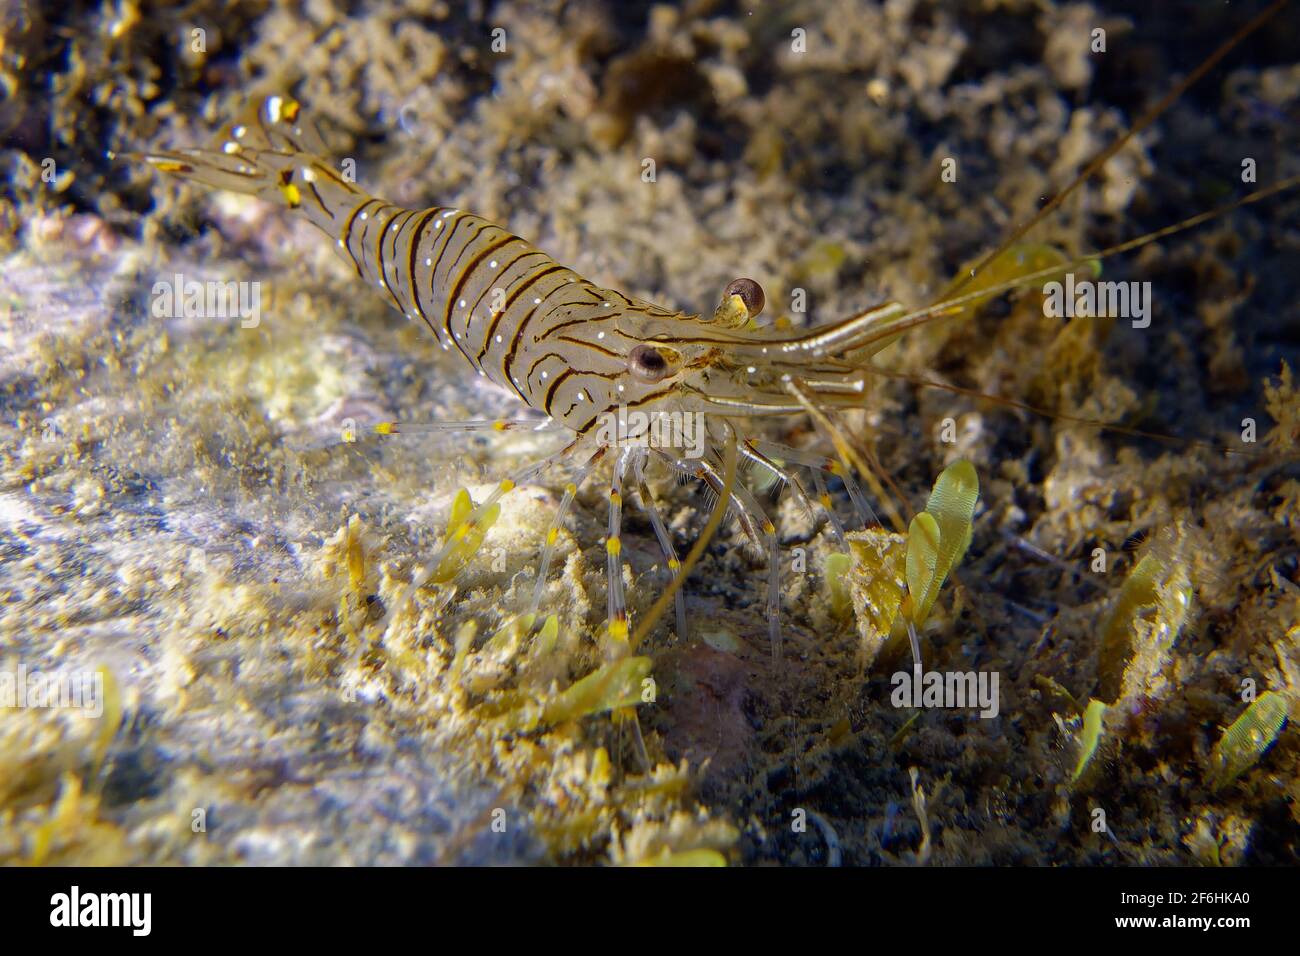 Common prawn or Glass prawn (Palaemon serratus) Stock Photo